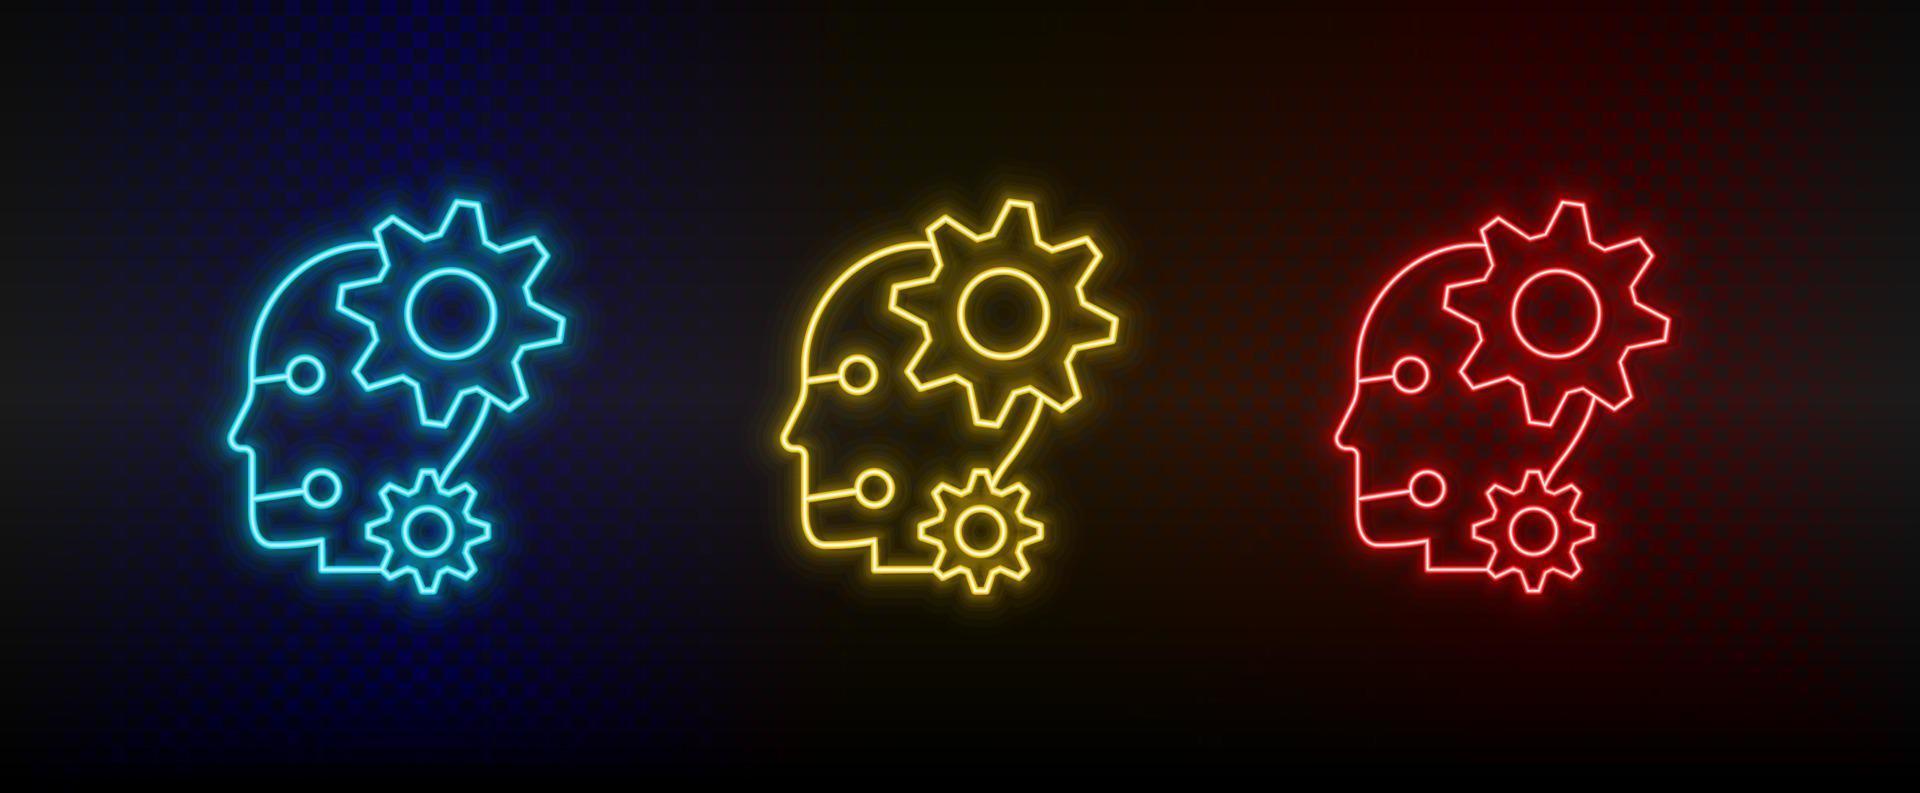 iconos de neón. configuraciones de robots conjunto de icono de vector de neón rojo, azul, amarillo sobre fondo oscuro